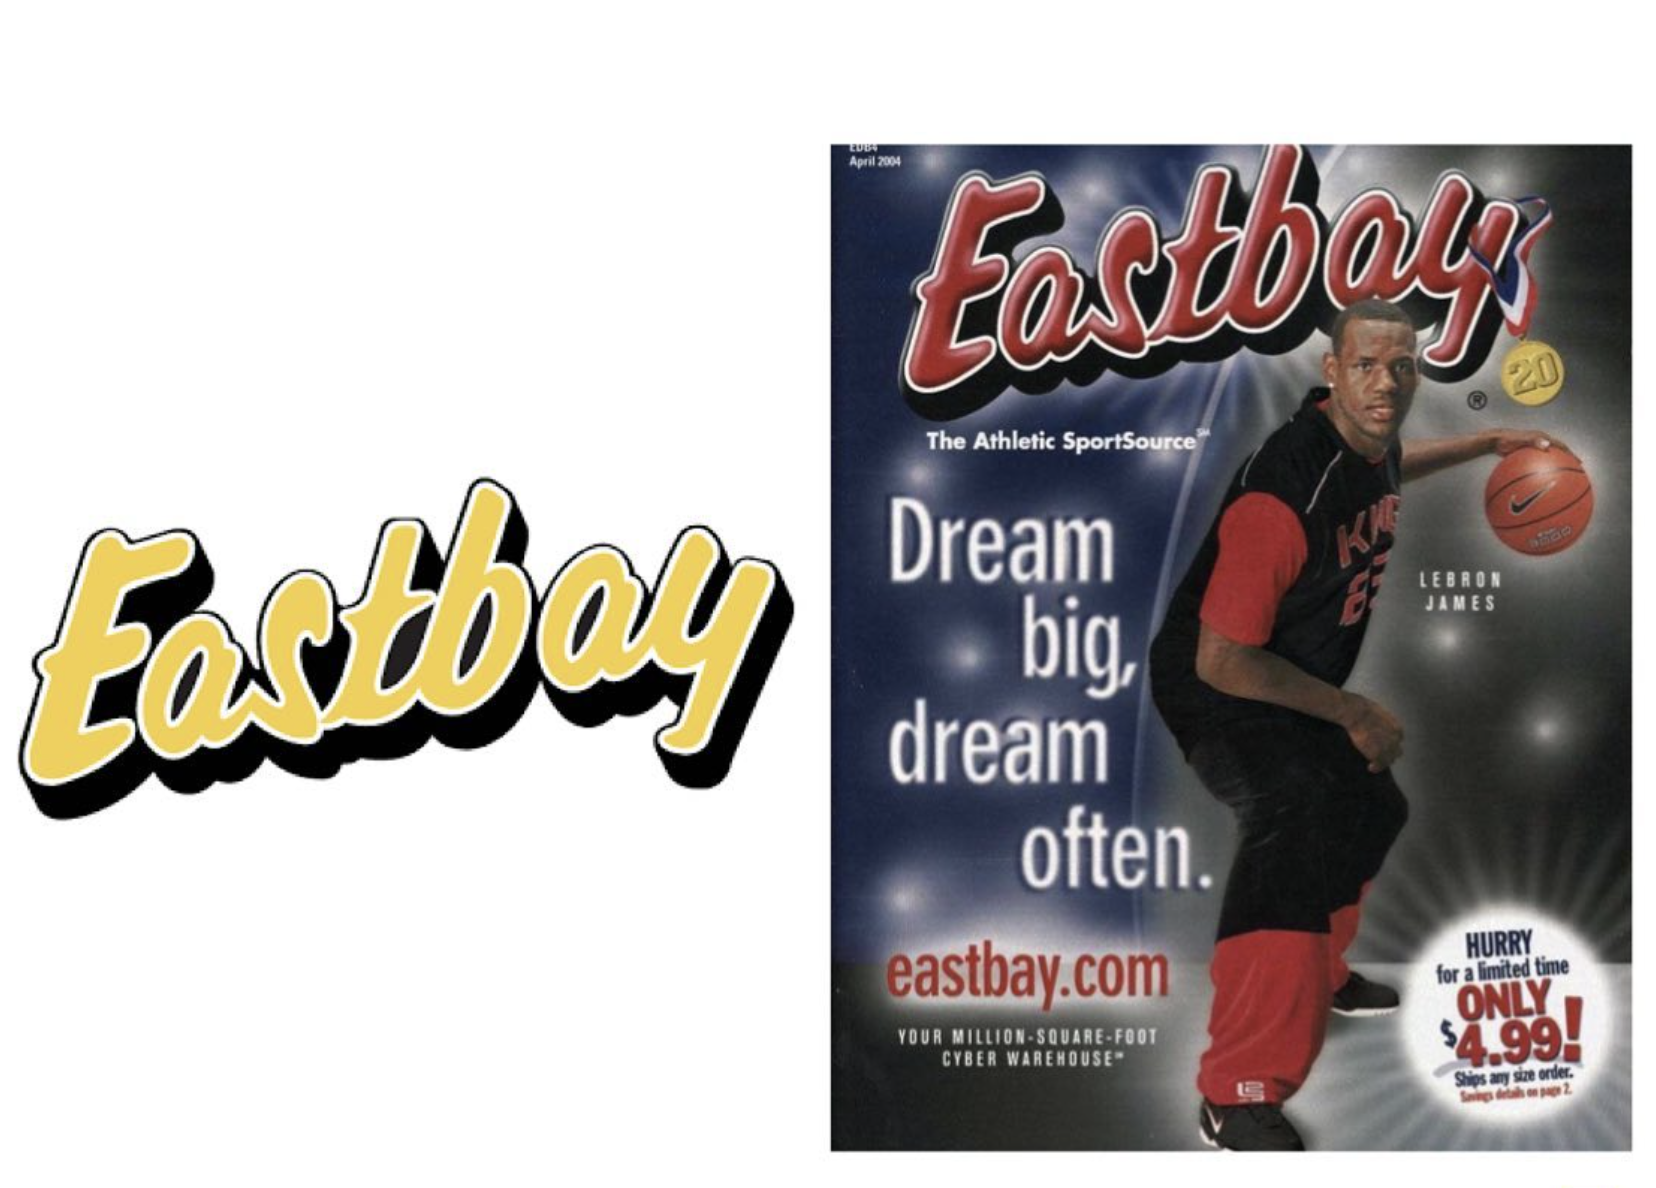 初代網上平台 EASTBAY 宣布將於今年內結束營業